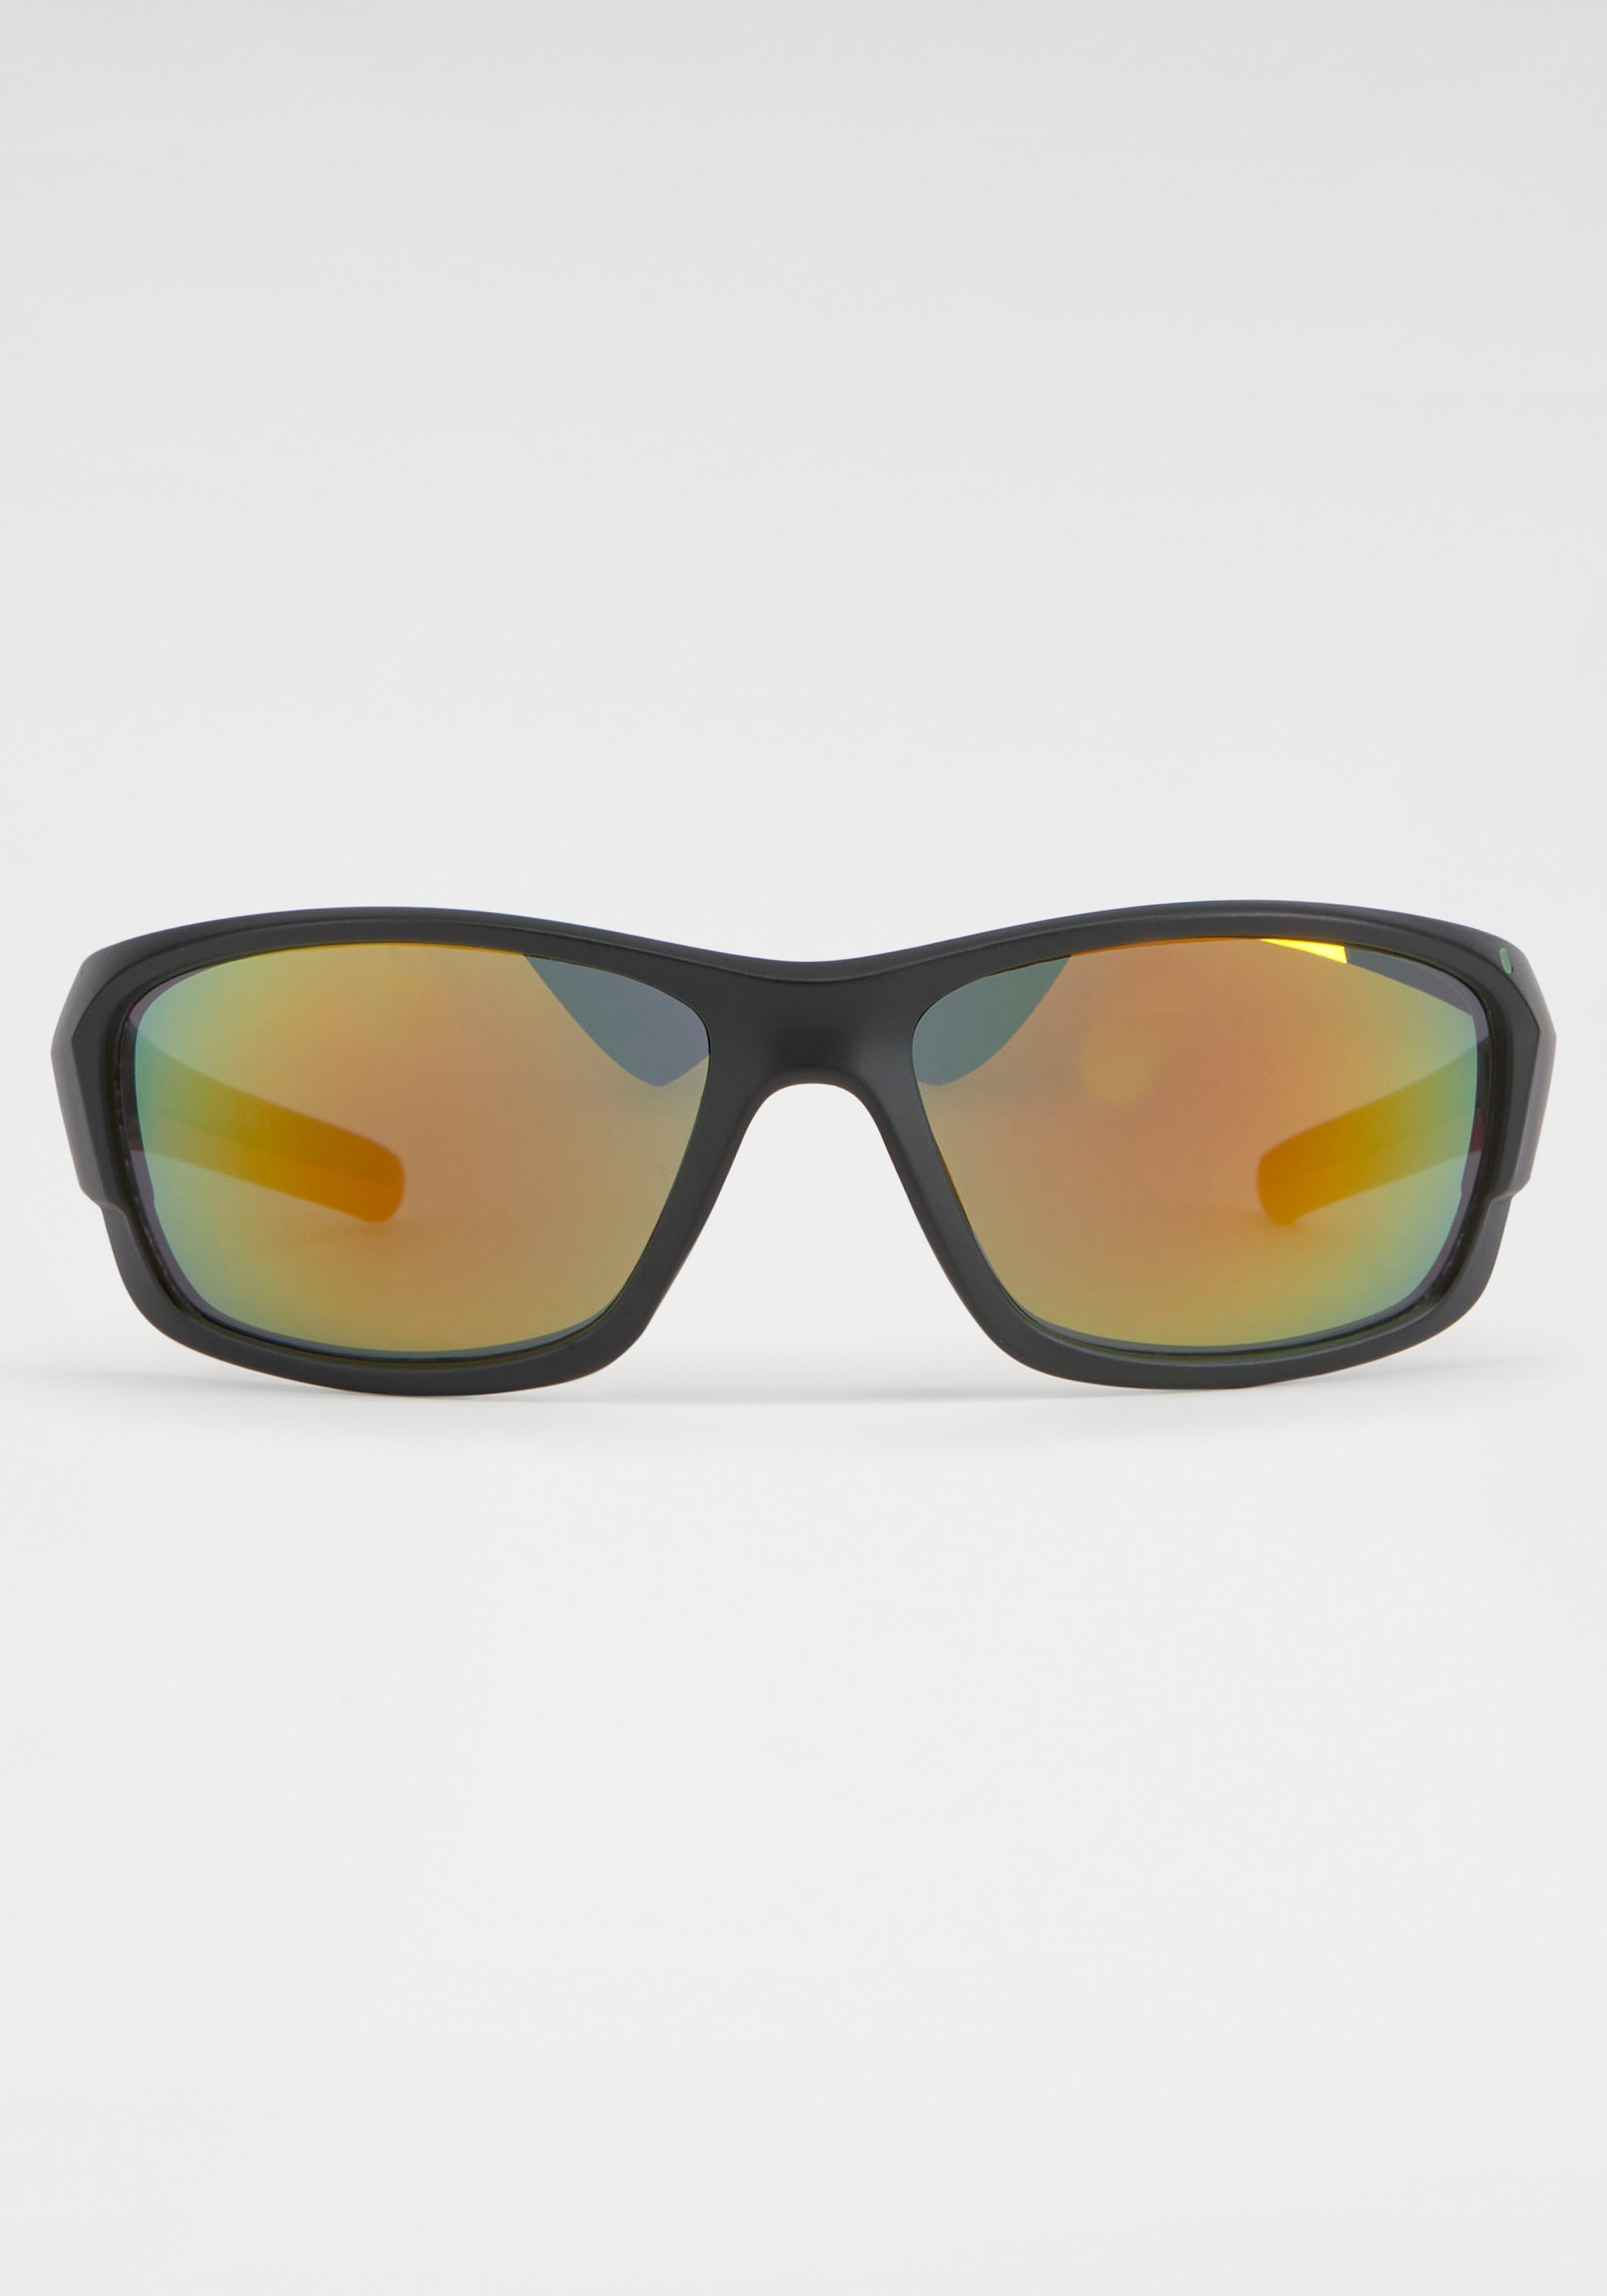 BACK IN Gläsern Eyewear bei BLACK verspiegelten Sonnenbrille, mit